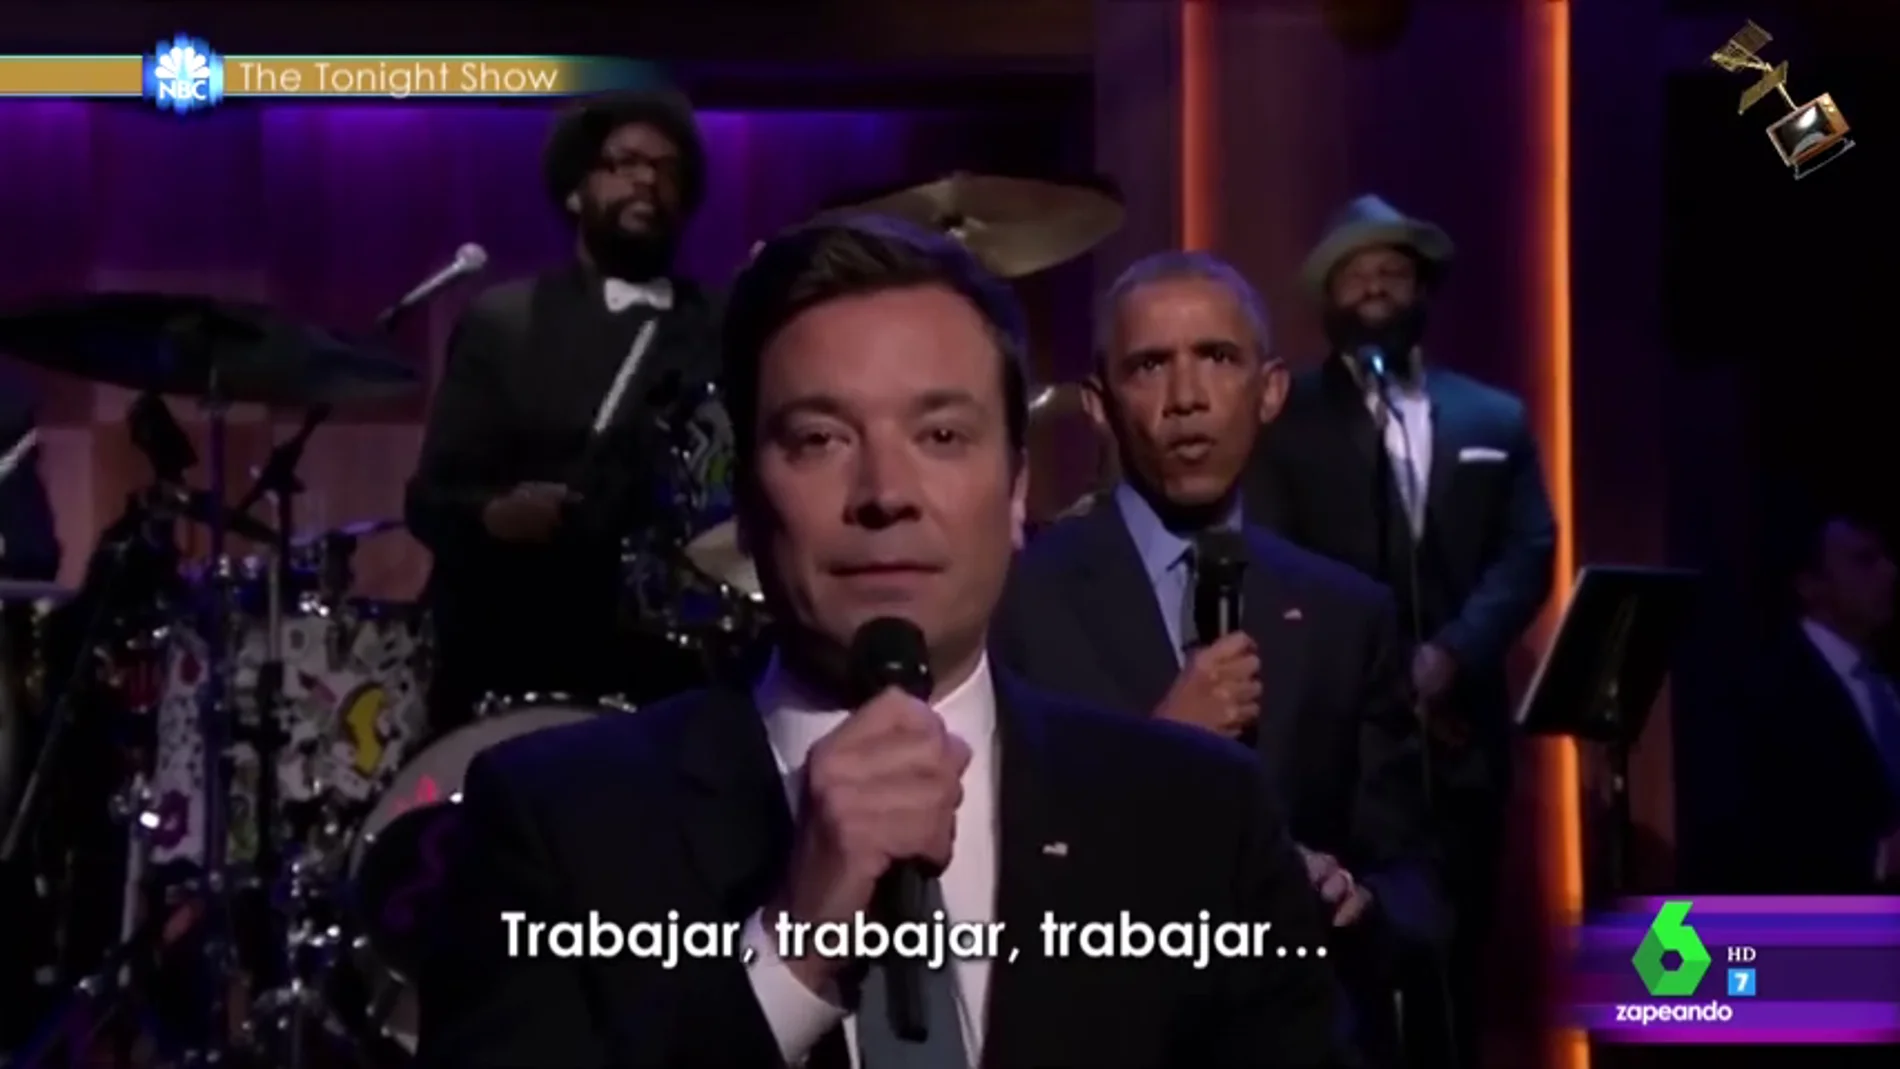 Frame 86.312895 de: La actuación de Barack Obama en 'The Tonight Show' se convierte en el último finalista a los premios Jimmy Fallon